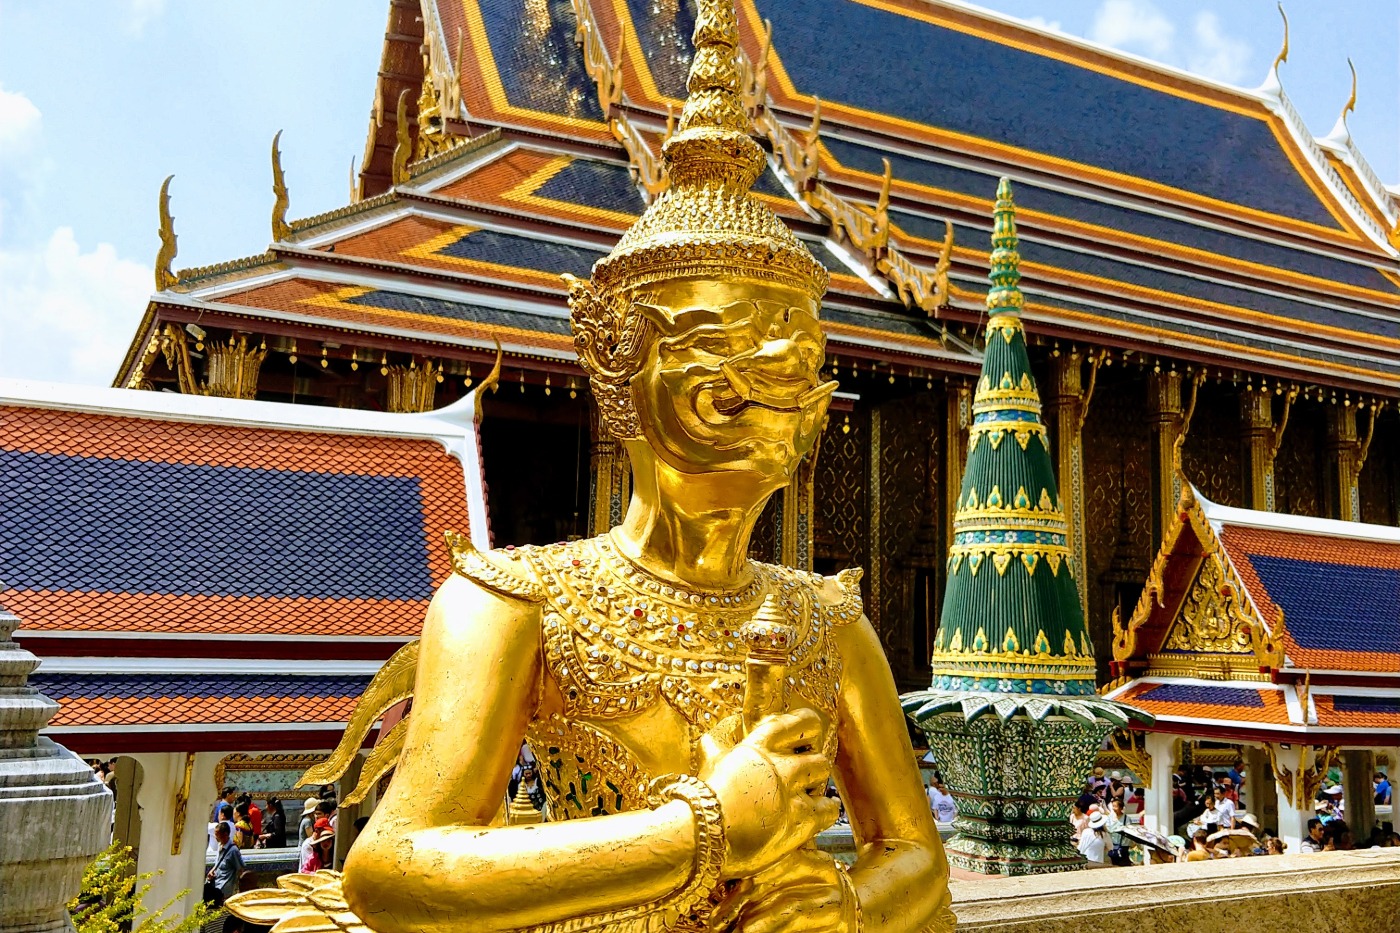 Beautiful statues and architecture Grand Palace Bangkok